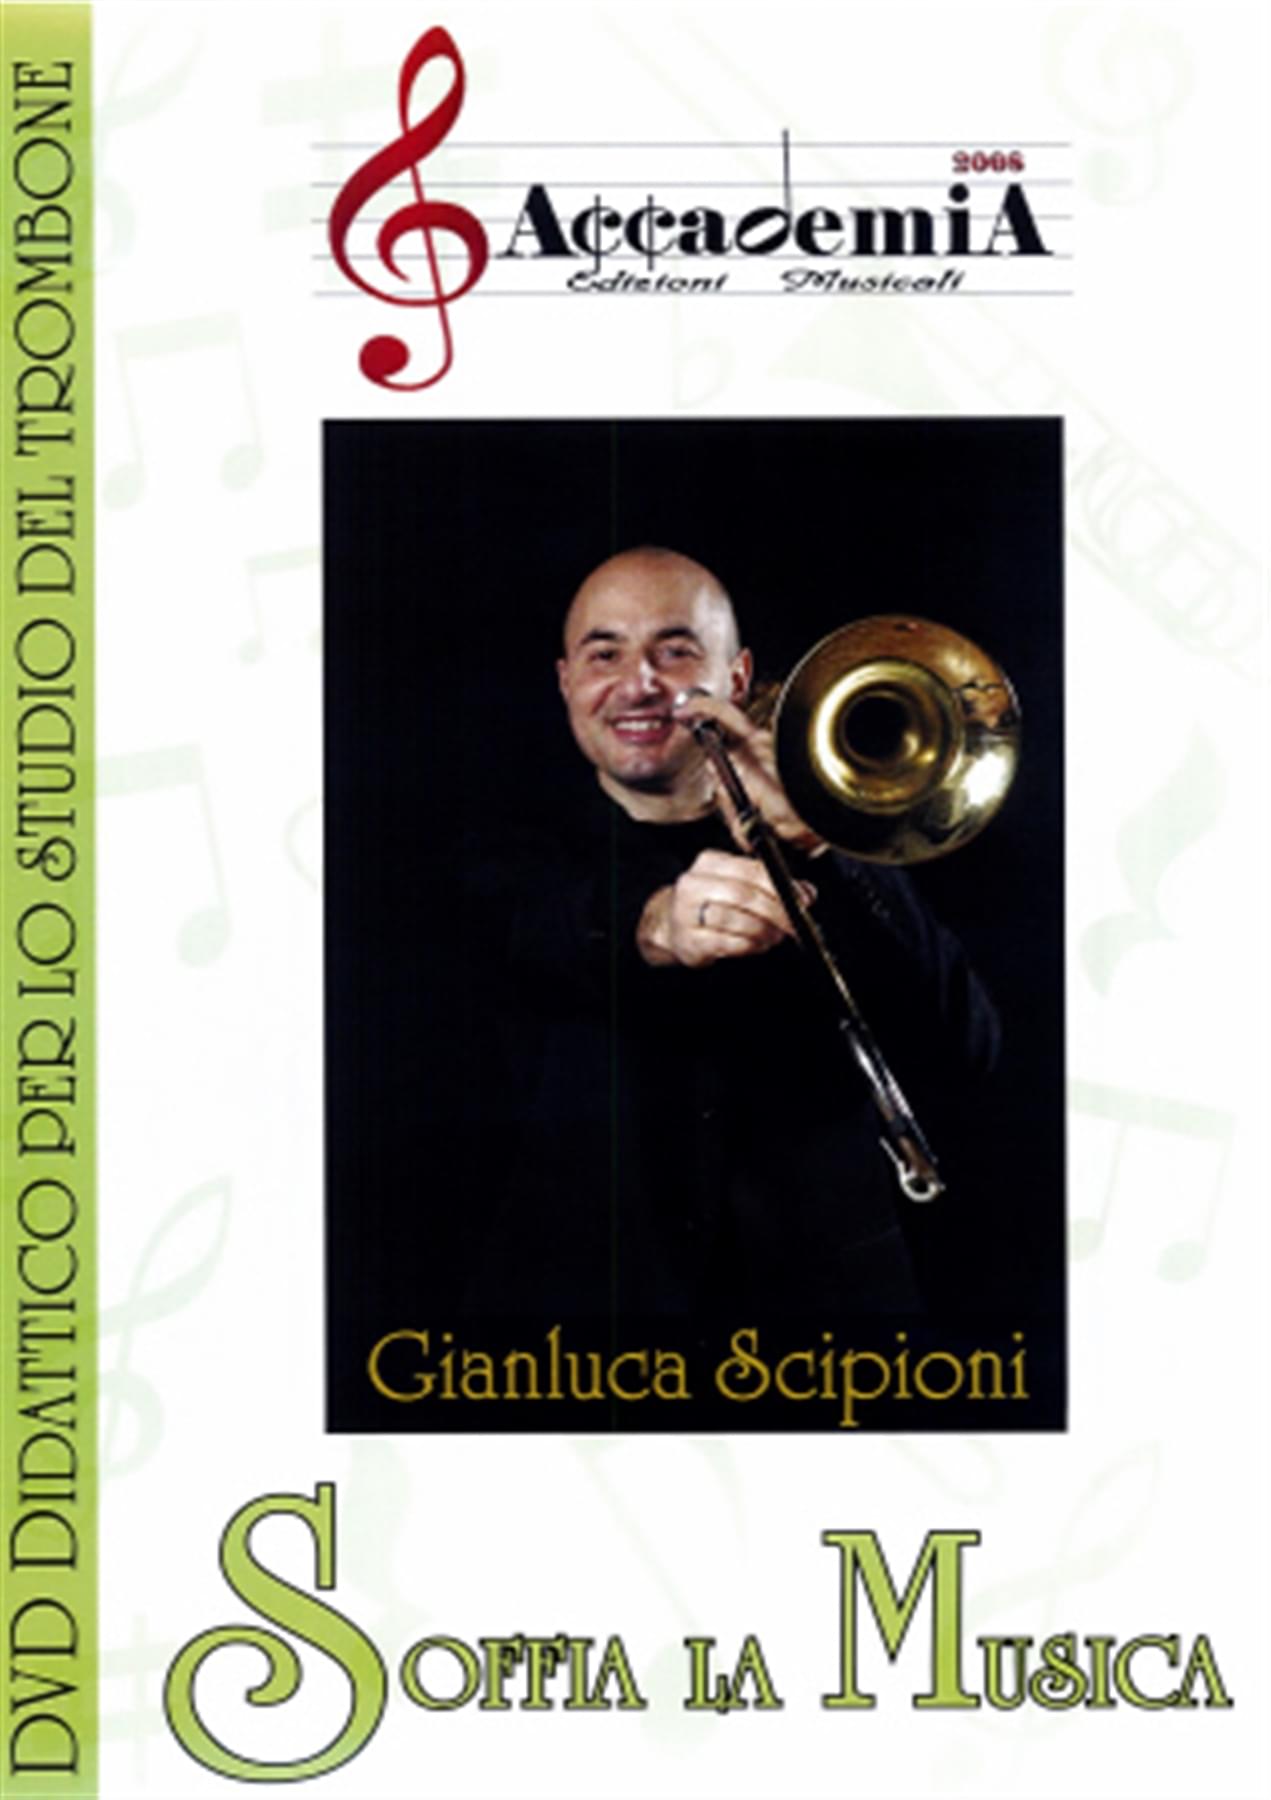 DVD SCIPIONI SOFFIA LA MUSICA X TROMBONE